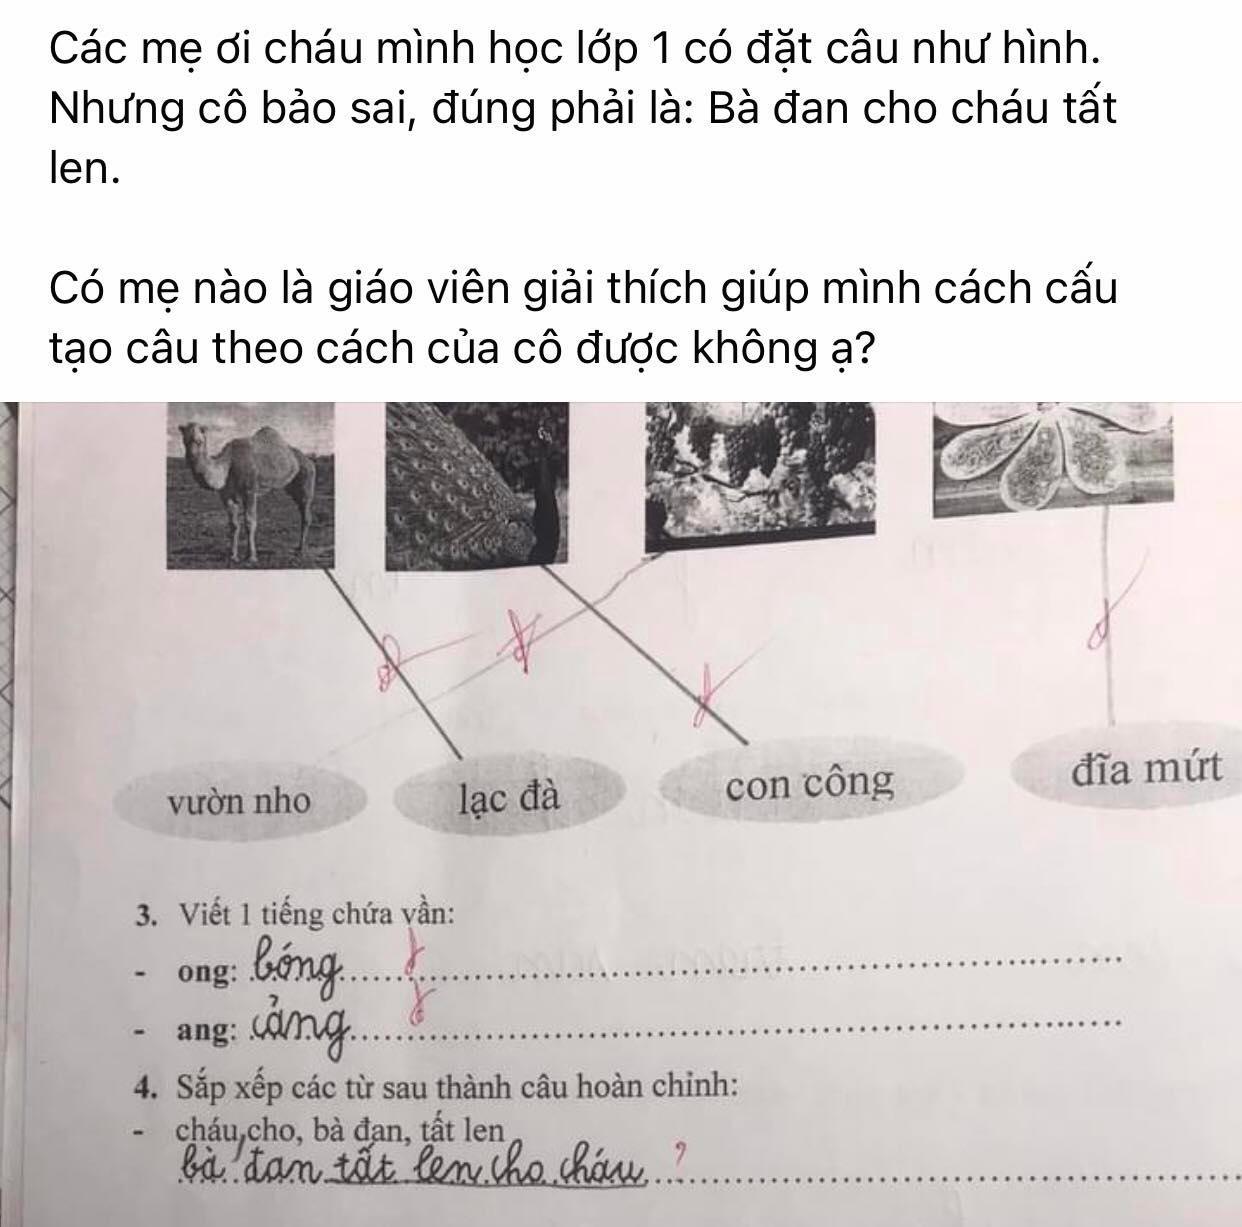 Đáp án bài tập tiếng Việt lớp 1 của giáo viên khiến phụ huynh hoang mang